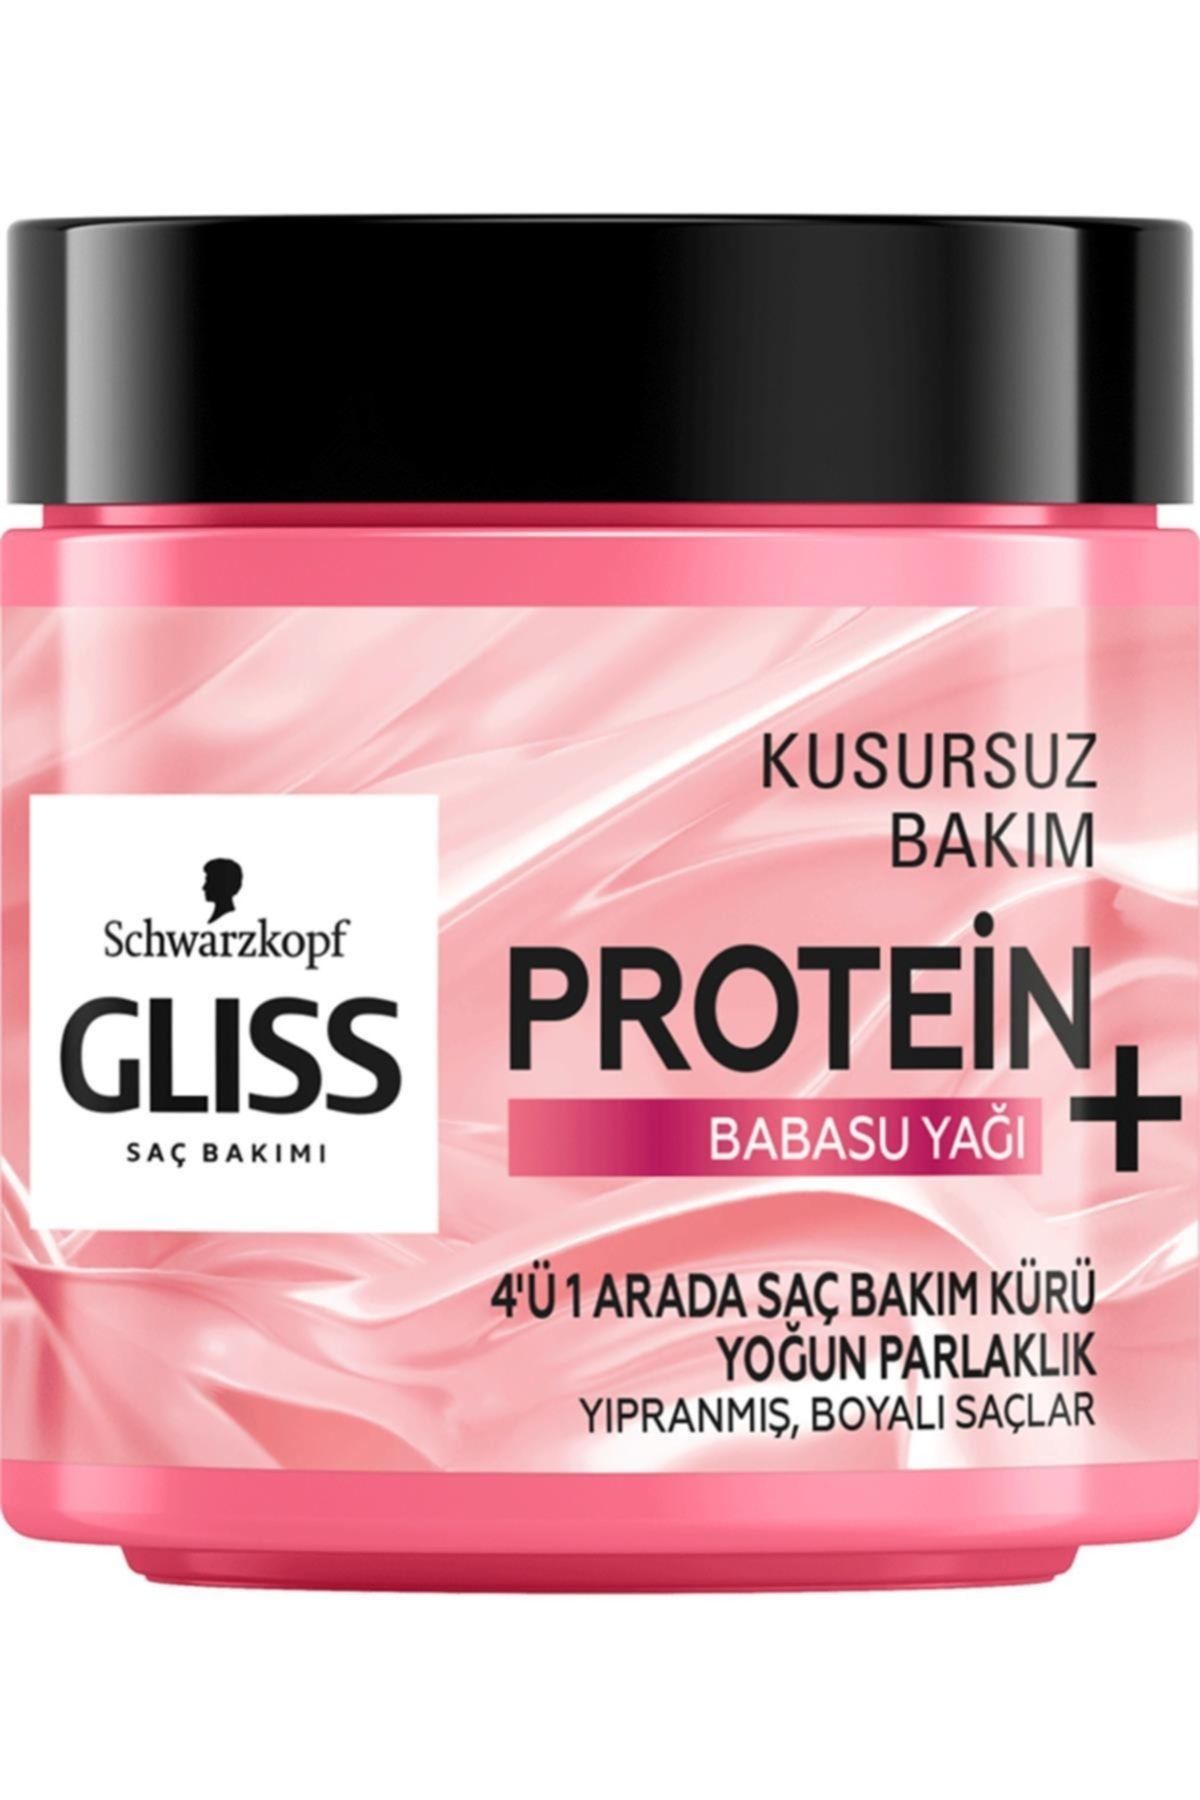 Gliss Protein + Babasu Yağı 4'ü 1 Arada Yoğun Parlaklık Saç Bakım Kürü 400 Ml